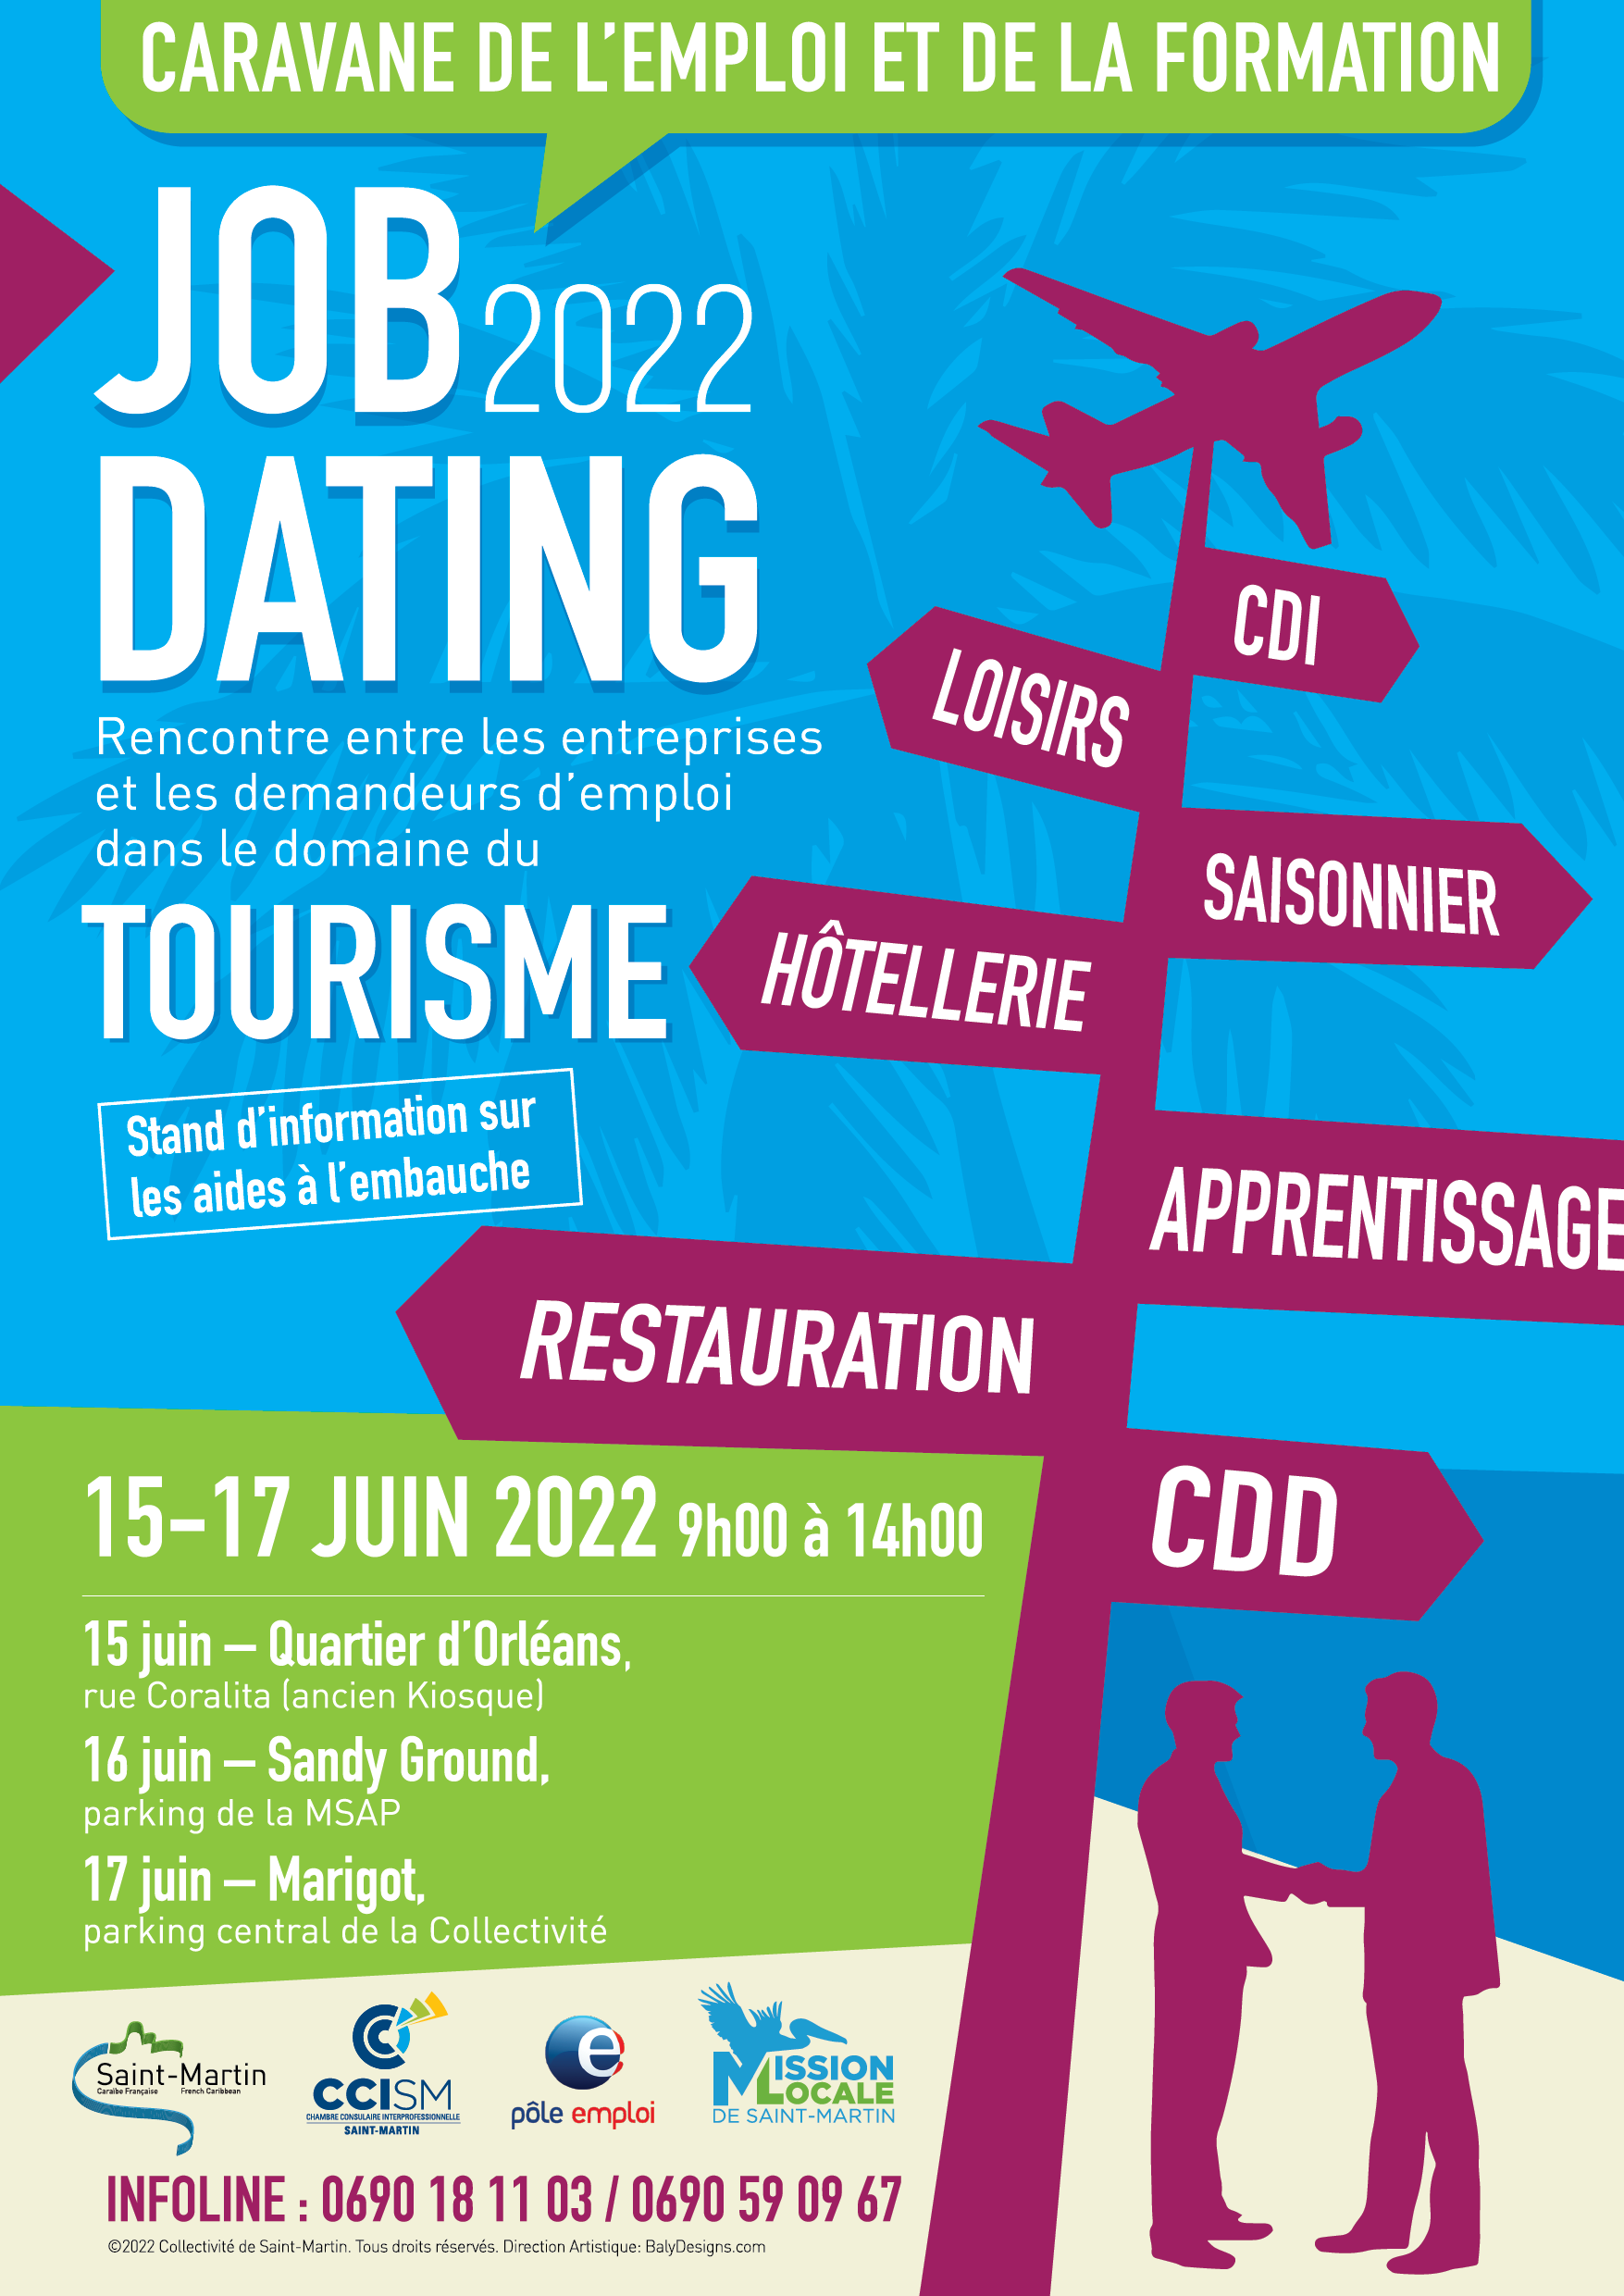 JOB DATING 2022  Rejoignez-vous au Job Dating tourisme ! 